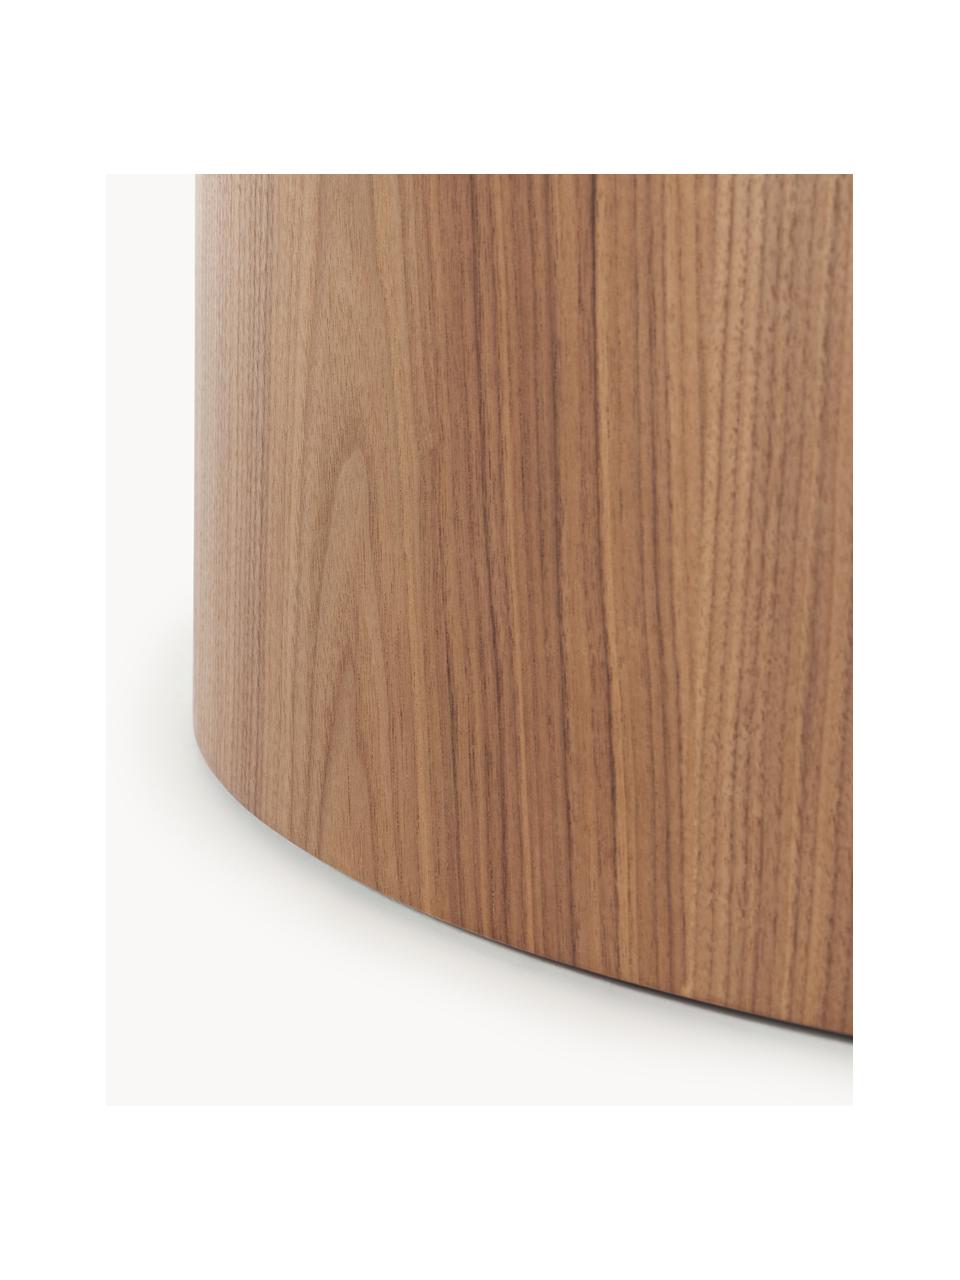 Table basse ronde en bois Dan, MDF avec placage en bois de noyer, Bois foncé, Ø 80 x haut. 30 cm